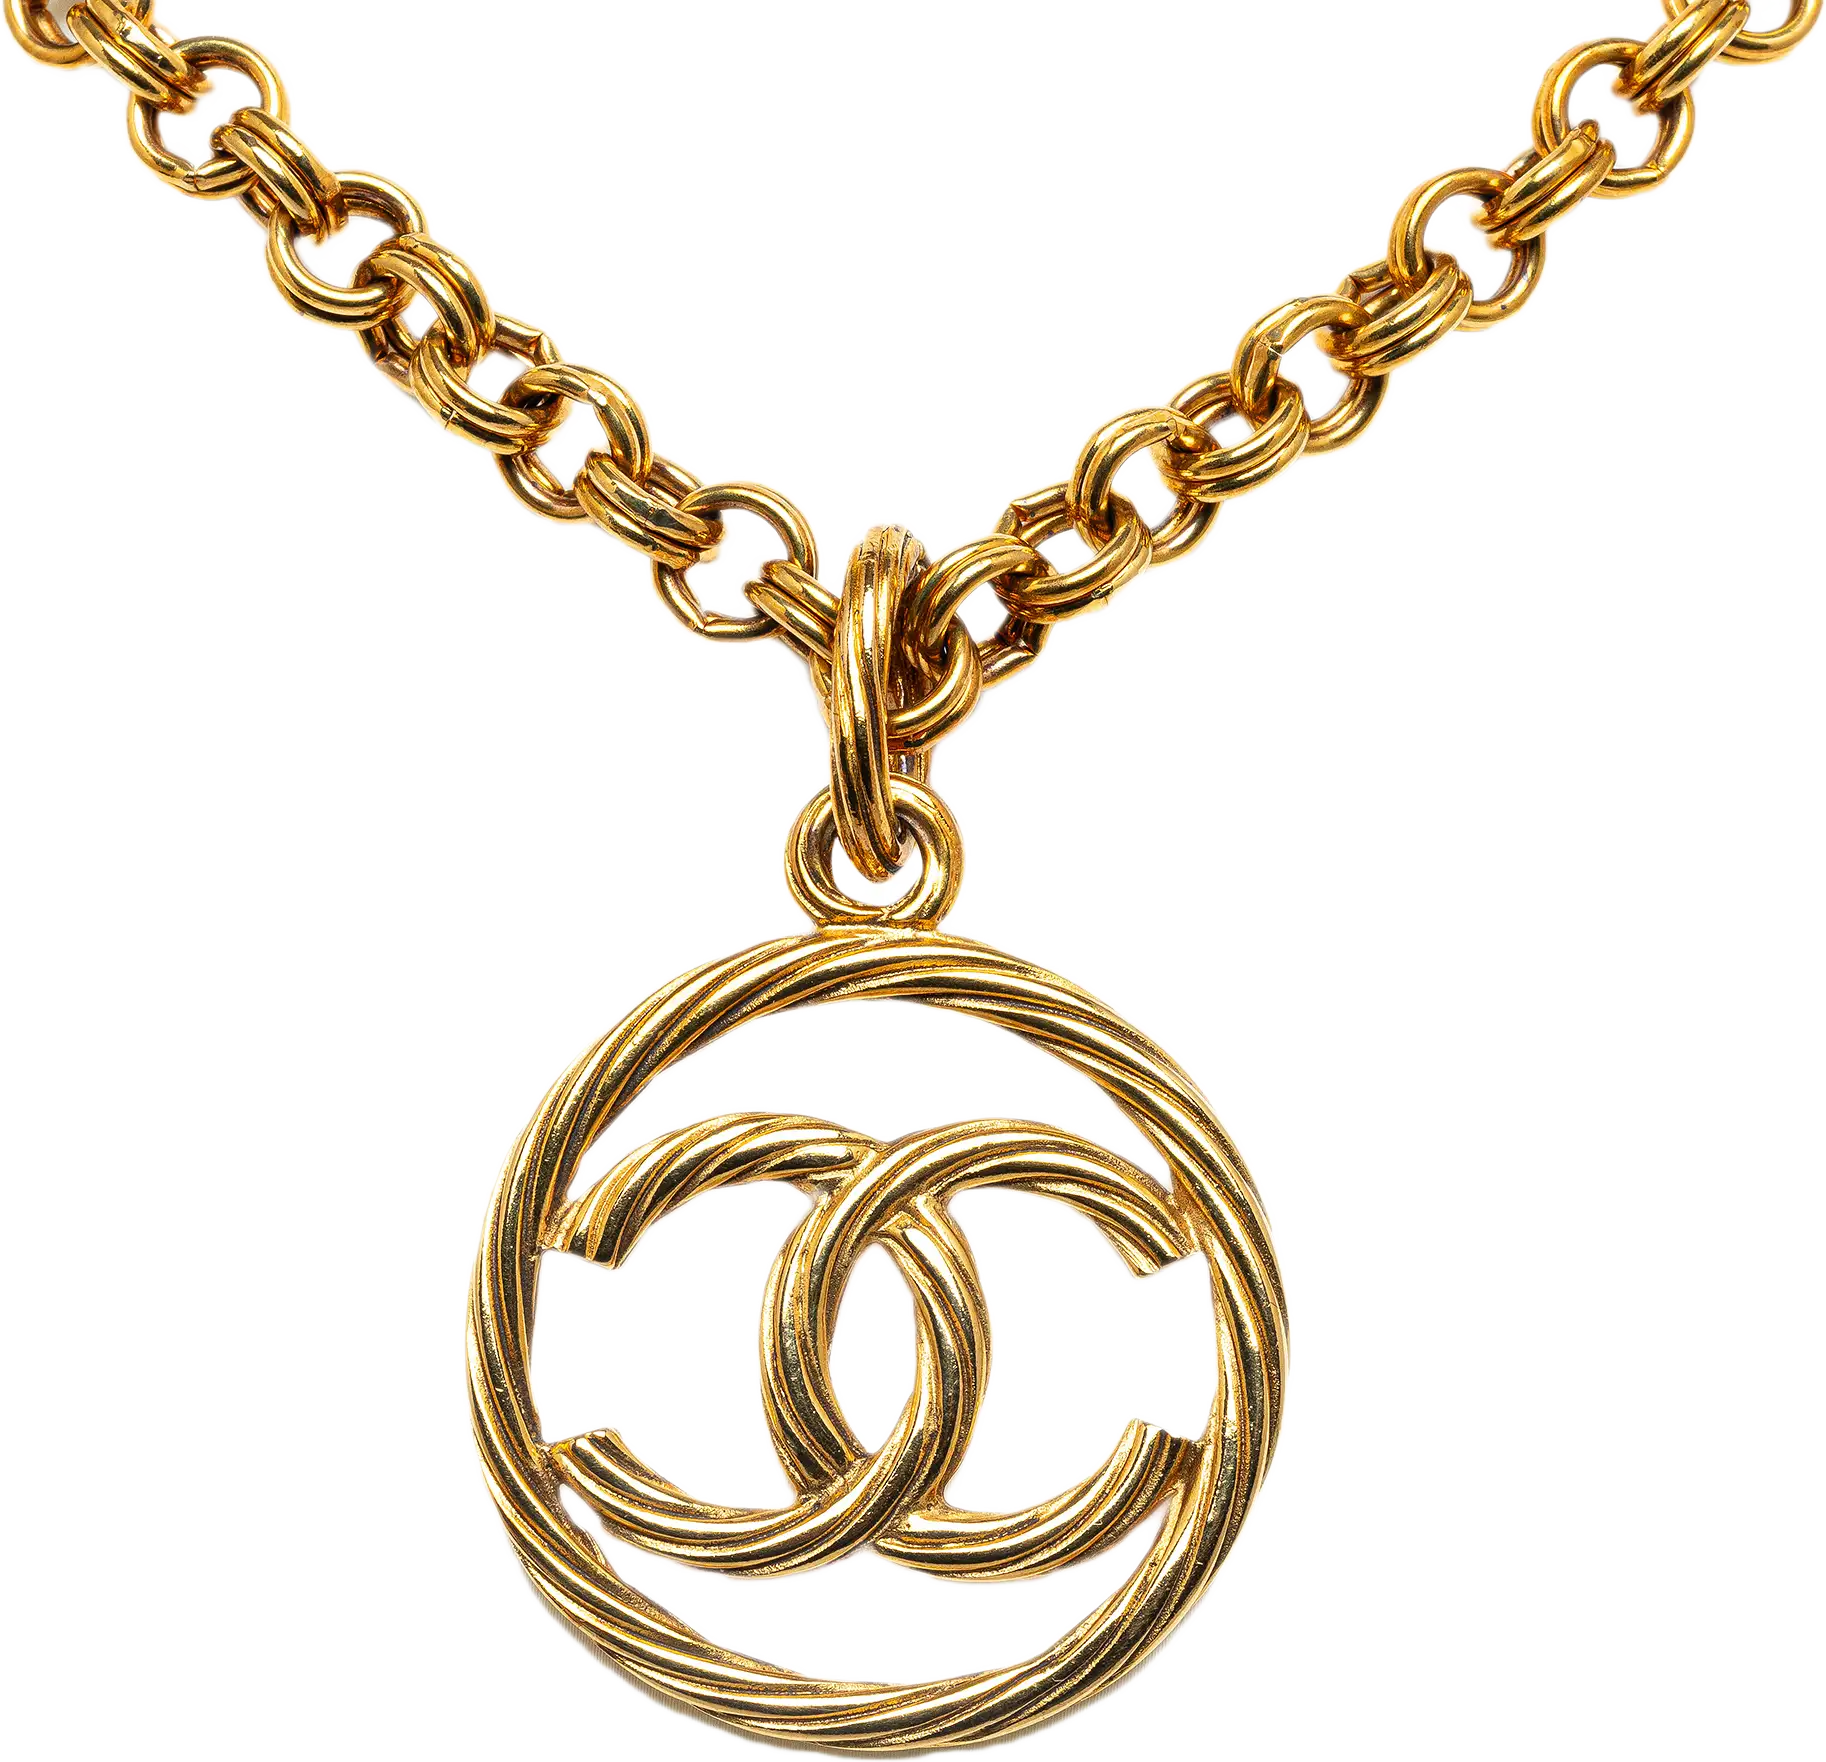 Chanel Cc Pendant Necklace